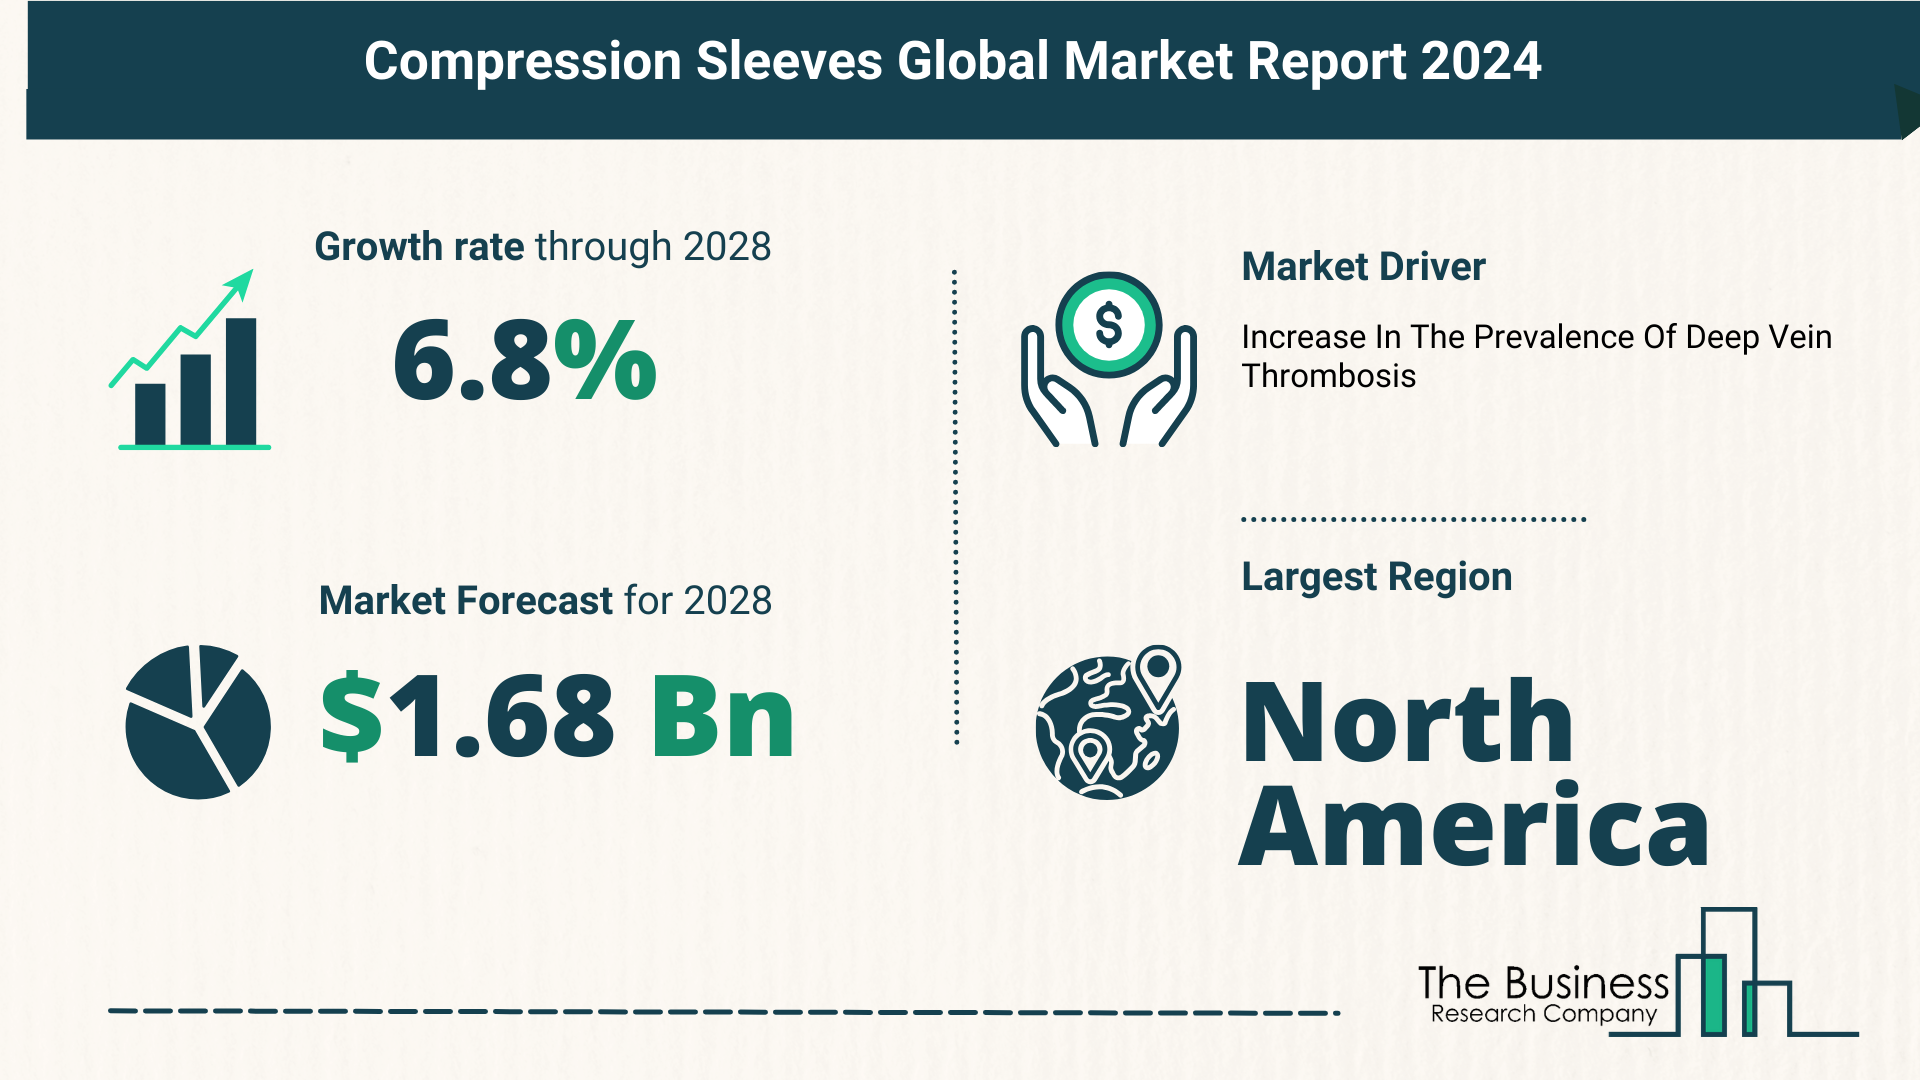 Global Compression Sleeves Market